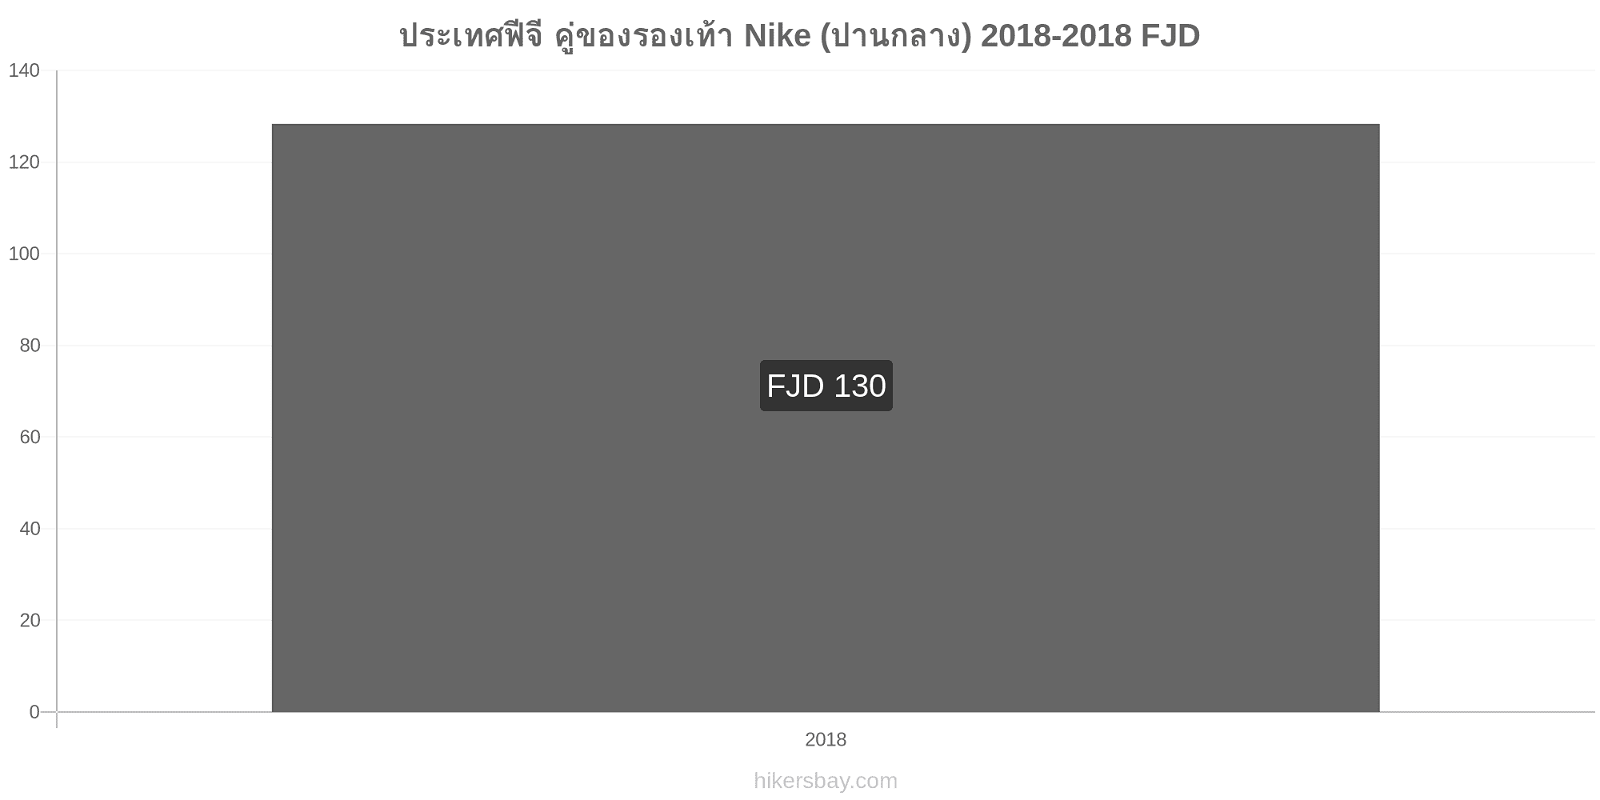 ประเทศฟีจี การเปลี่ยนแปลงราคา คู่ของรองเท้า Nike (ปานกลาง) hikersbay.com